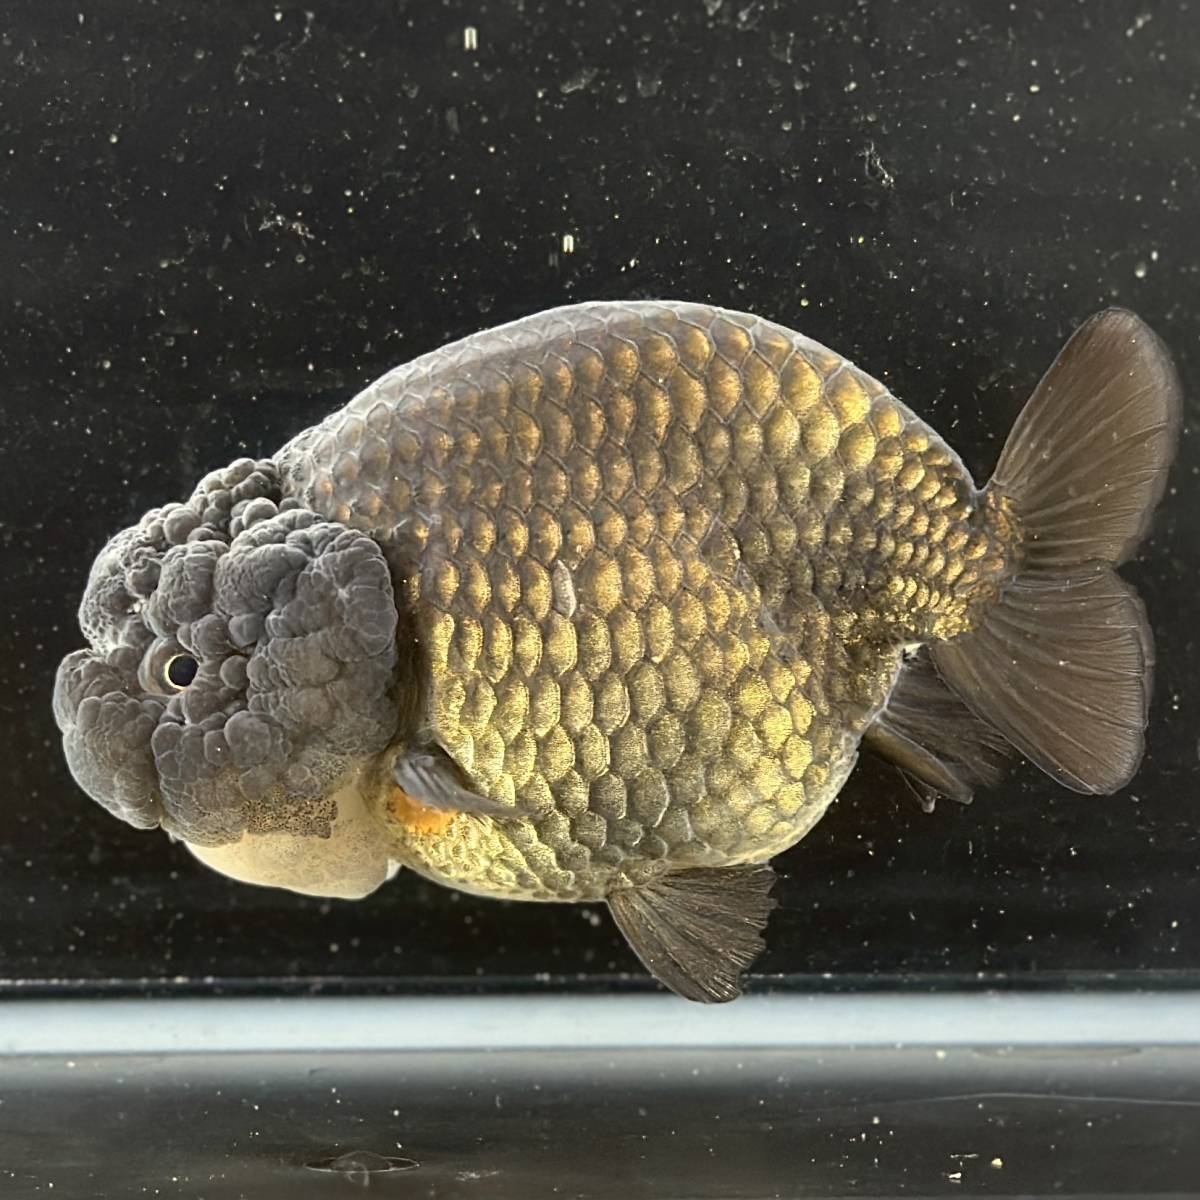  золотая рыбка специализированный магазин [GOOD\'s Gold Fish shop Nagoya ] Thai производство * золотой .* чёрный золотая рыбка * Buffalo золотистый, цвет шампанского 3